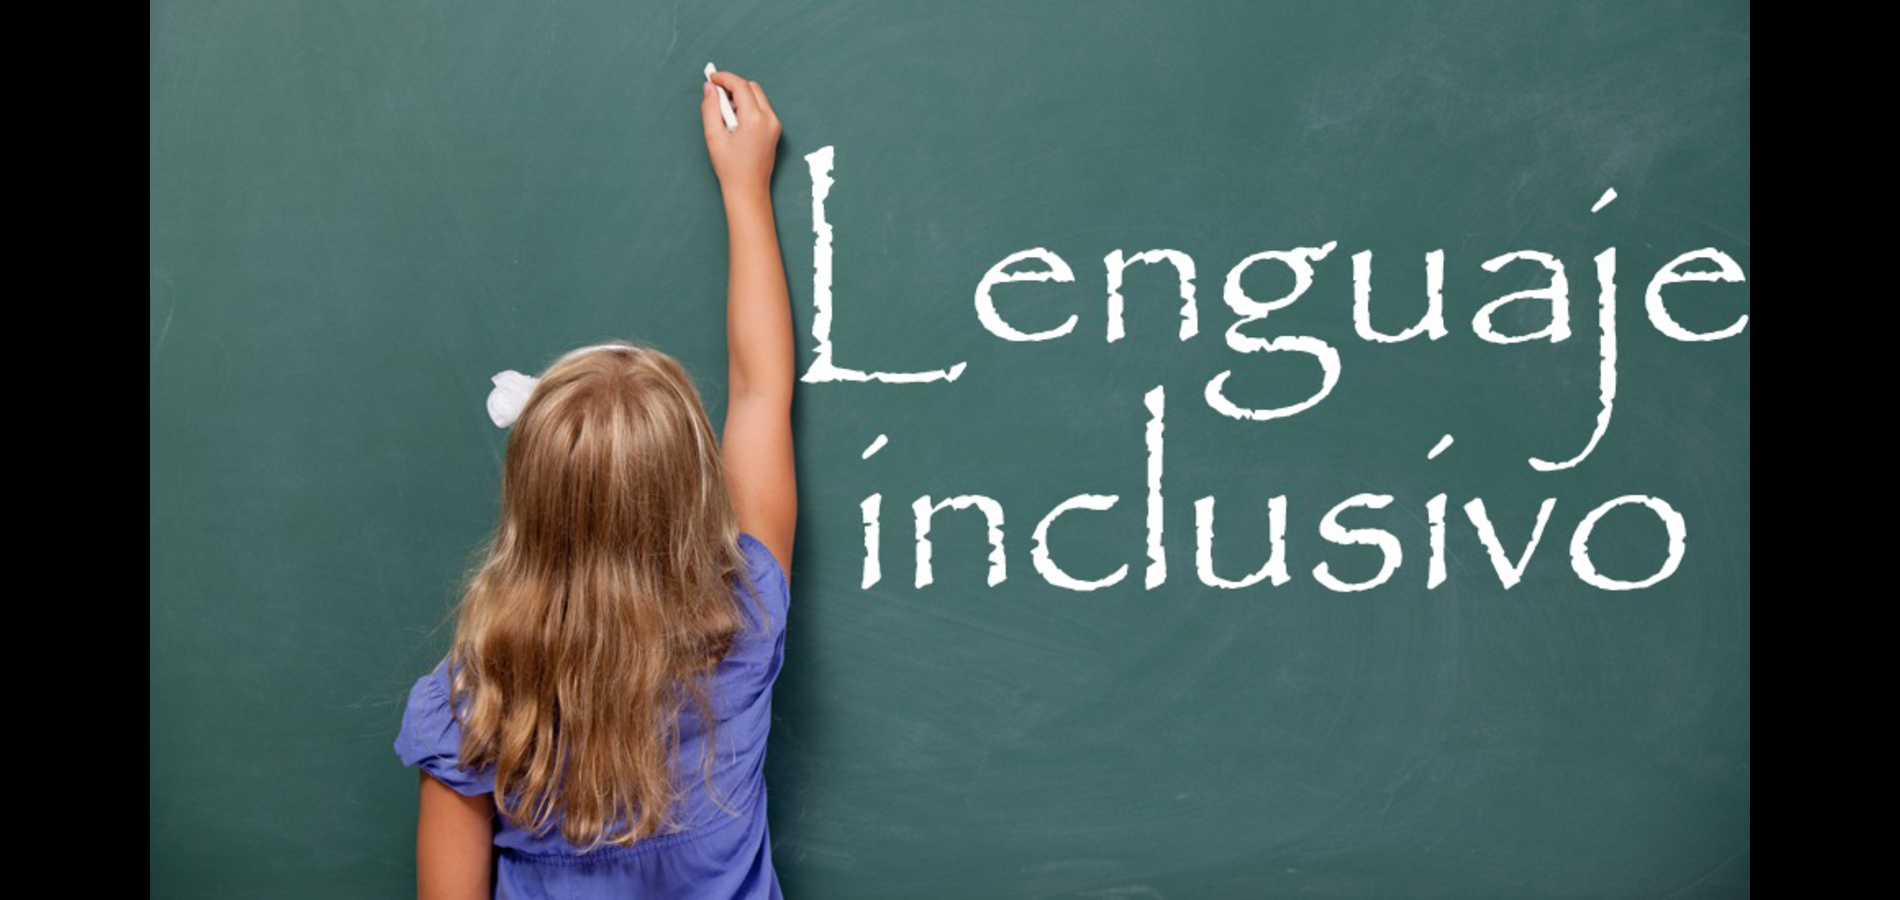 Precisan el lenguaje inclusivo en textos escolares y documentos públicos